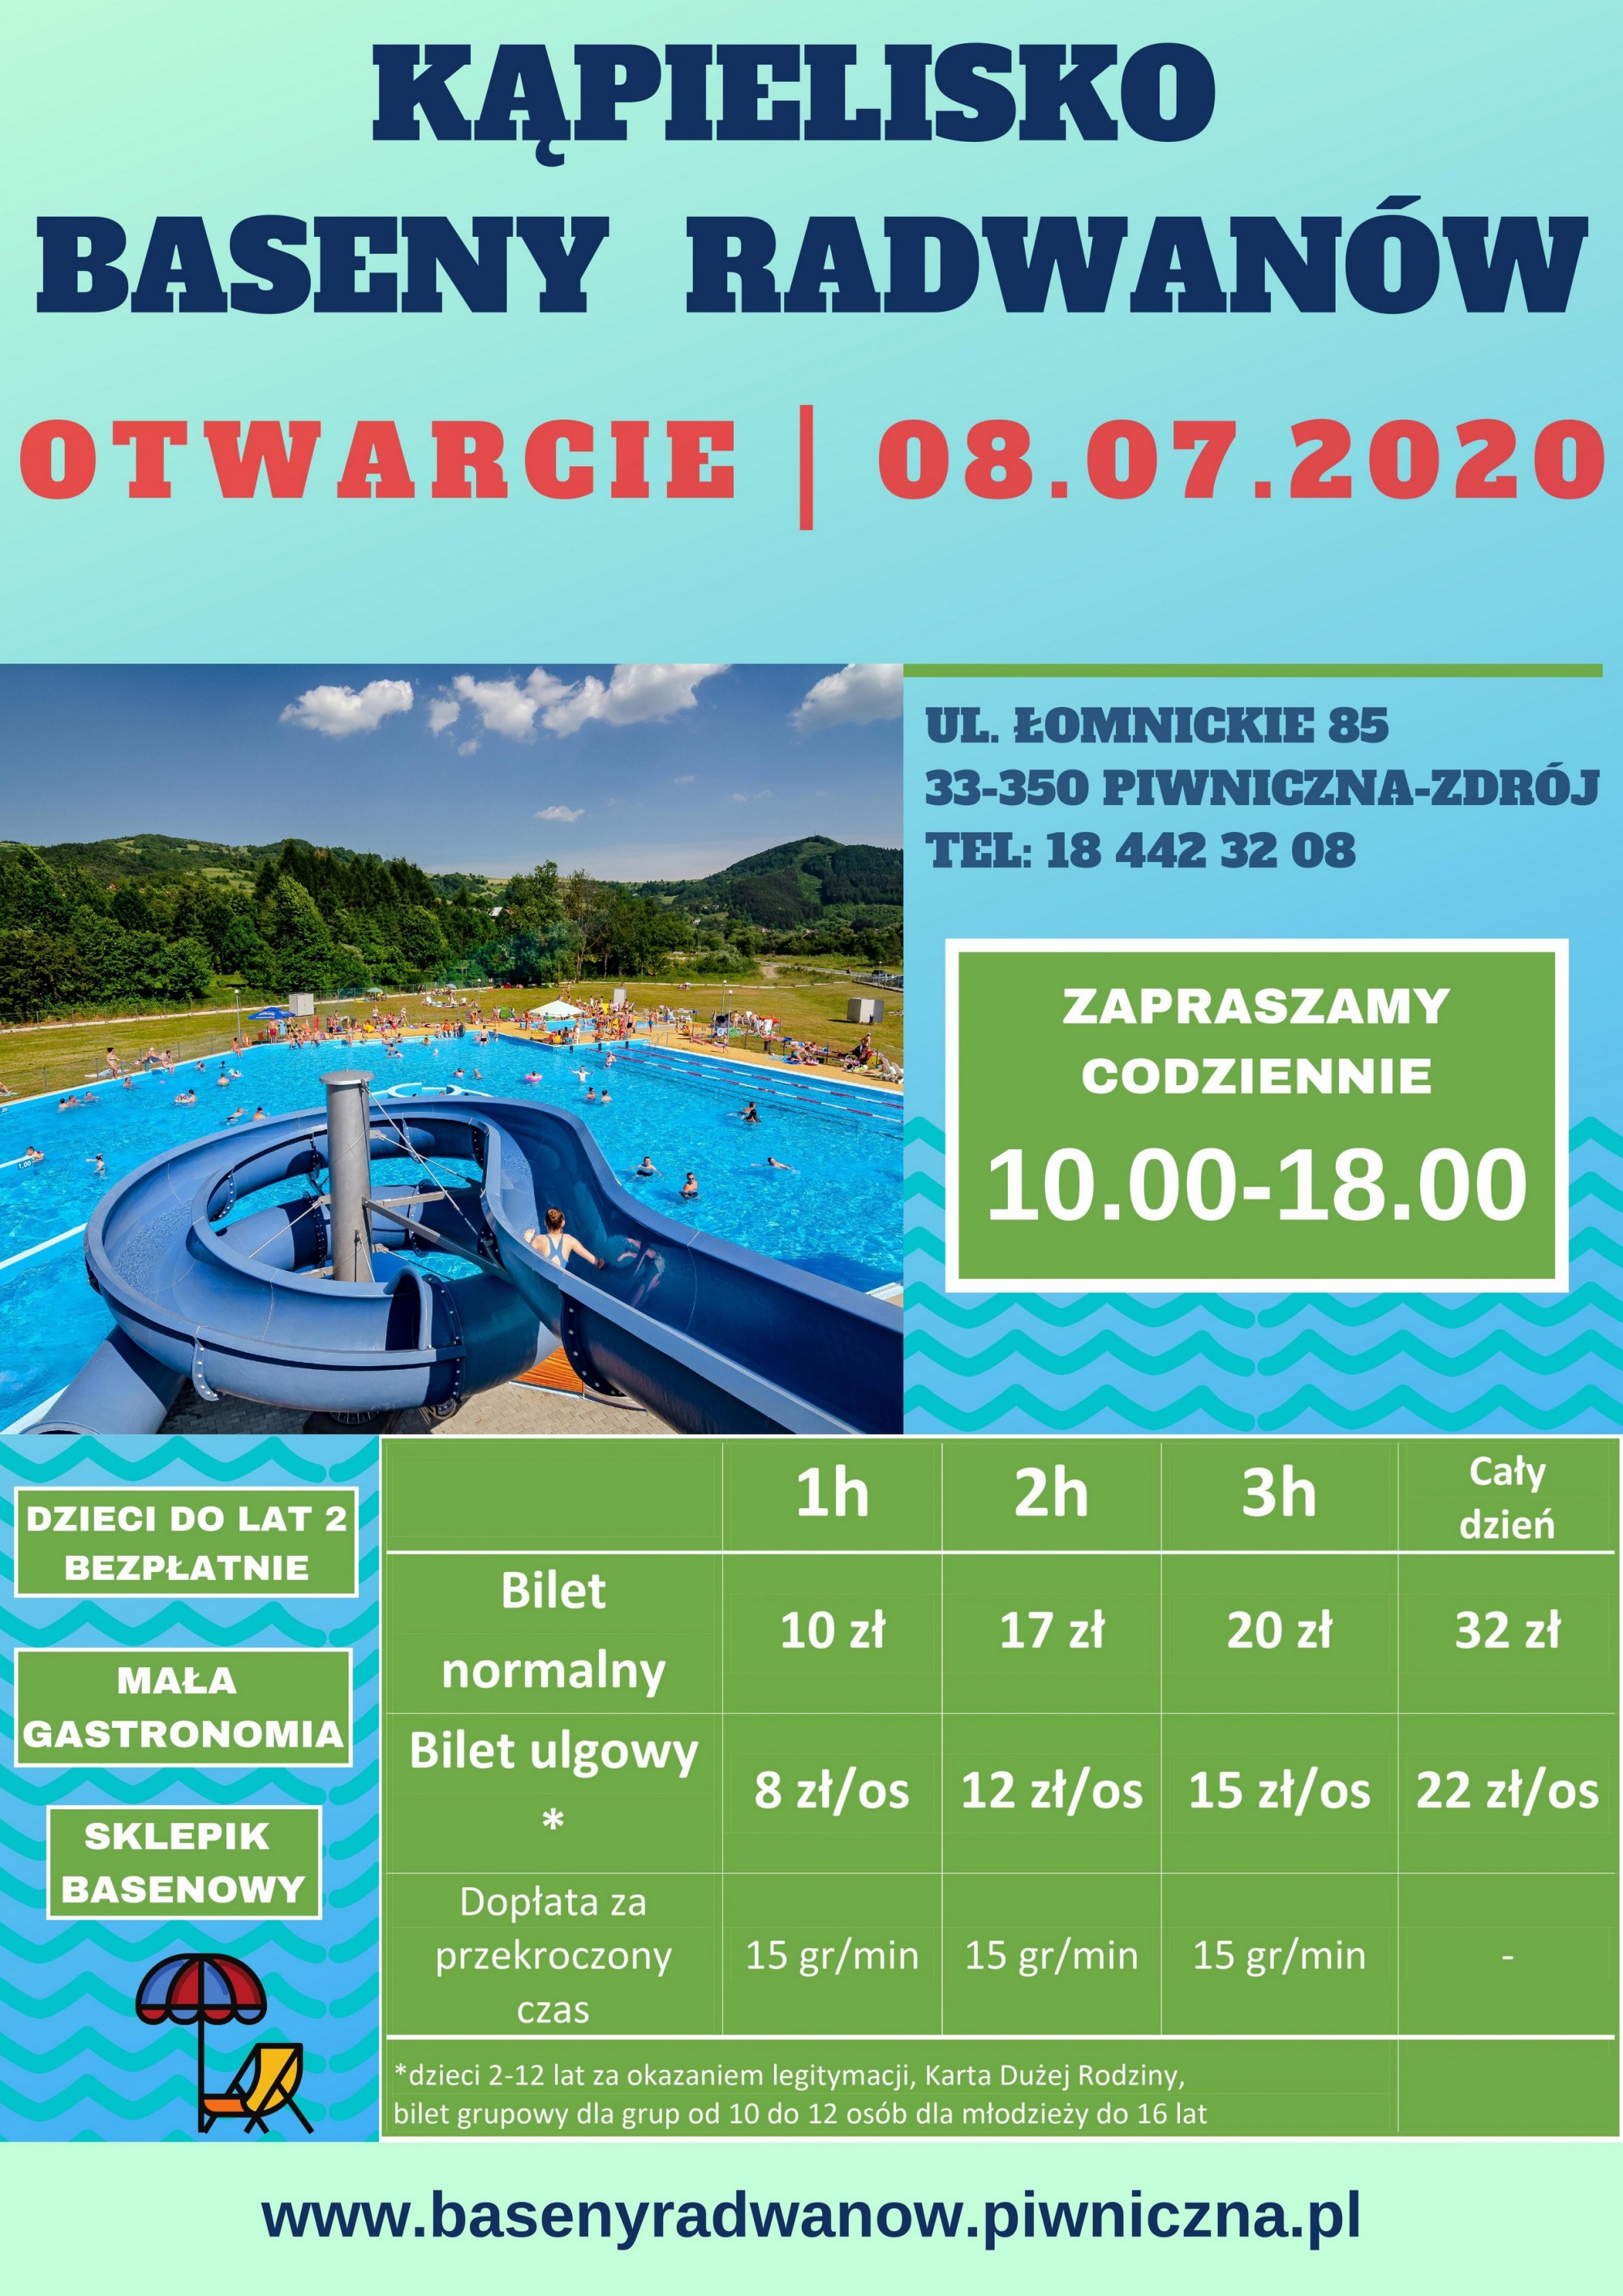 Kąpielisko Baseny Radwanów czynne od 08.07.2020